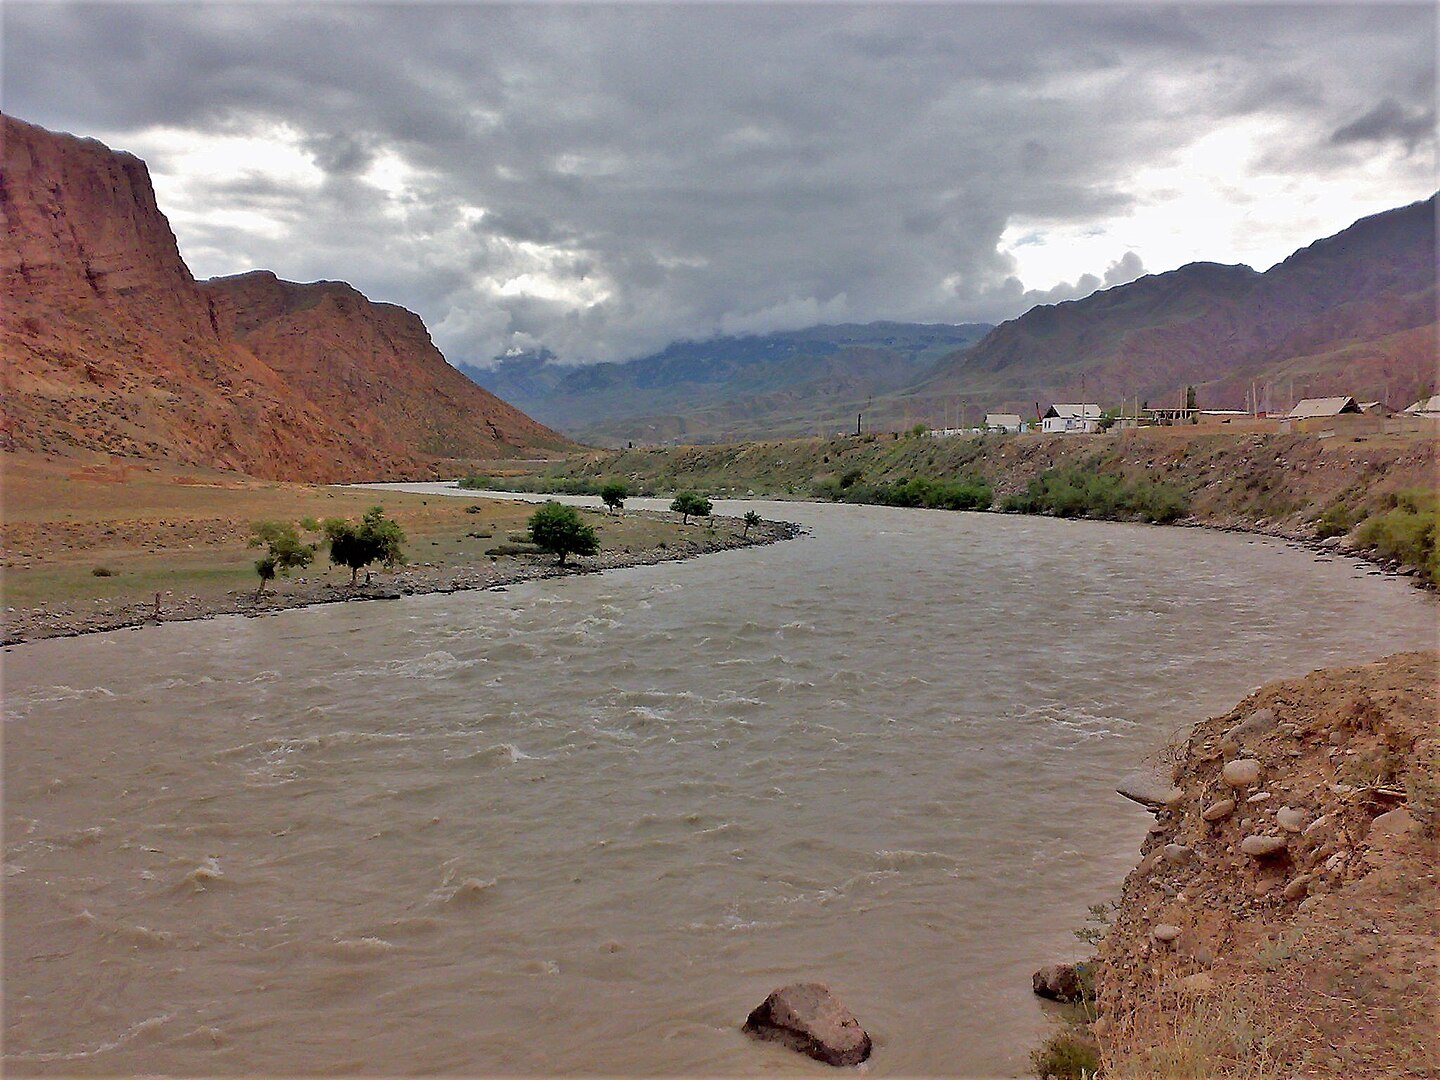 Sông Naryn có nhiều địa điểm thủy điện tiềm năng. Ảnh: Public Domain